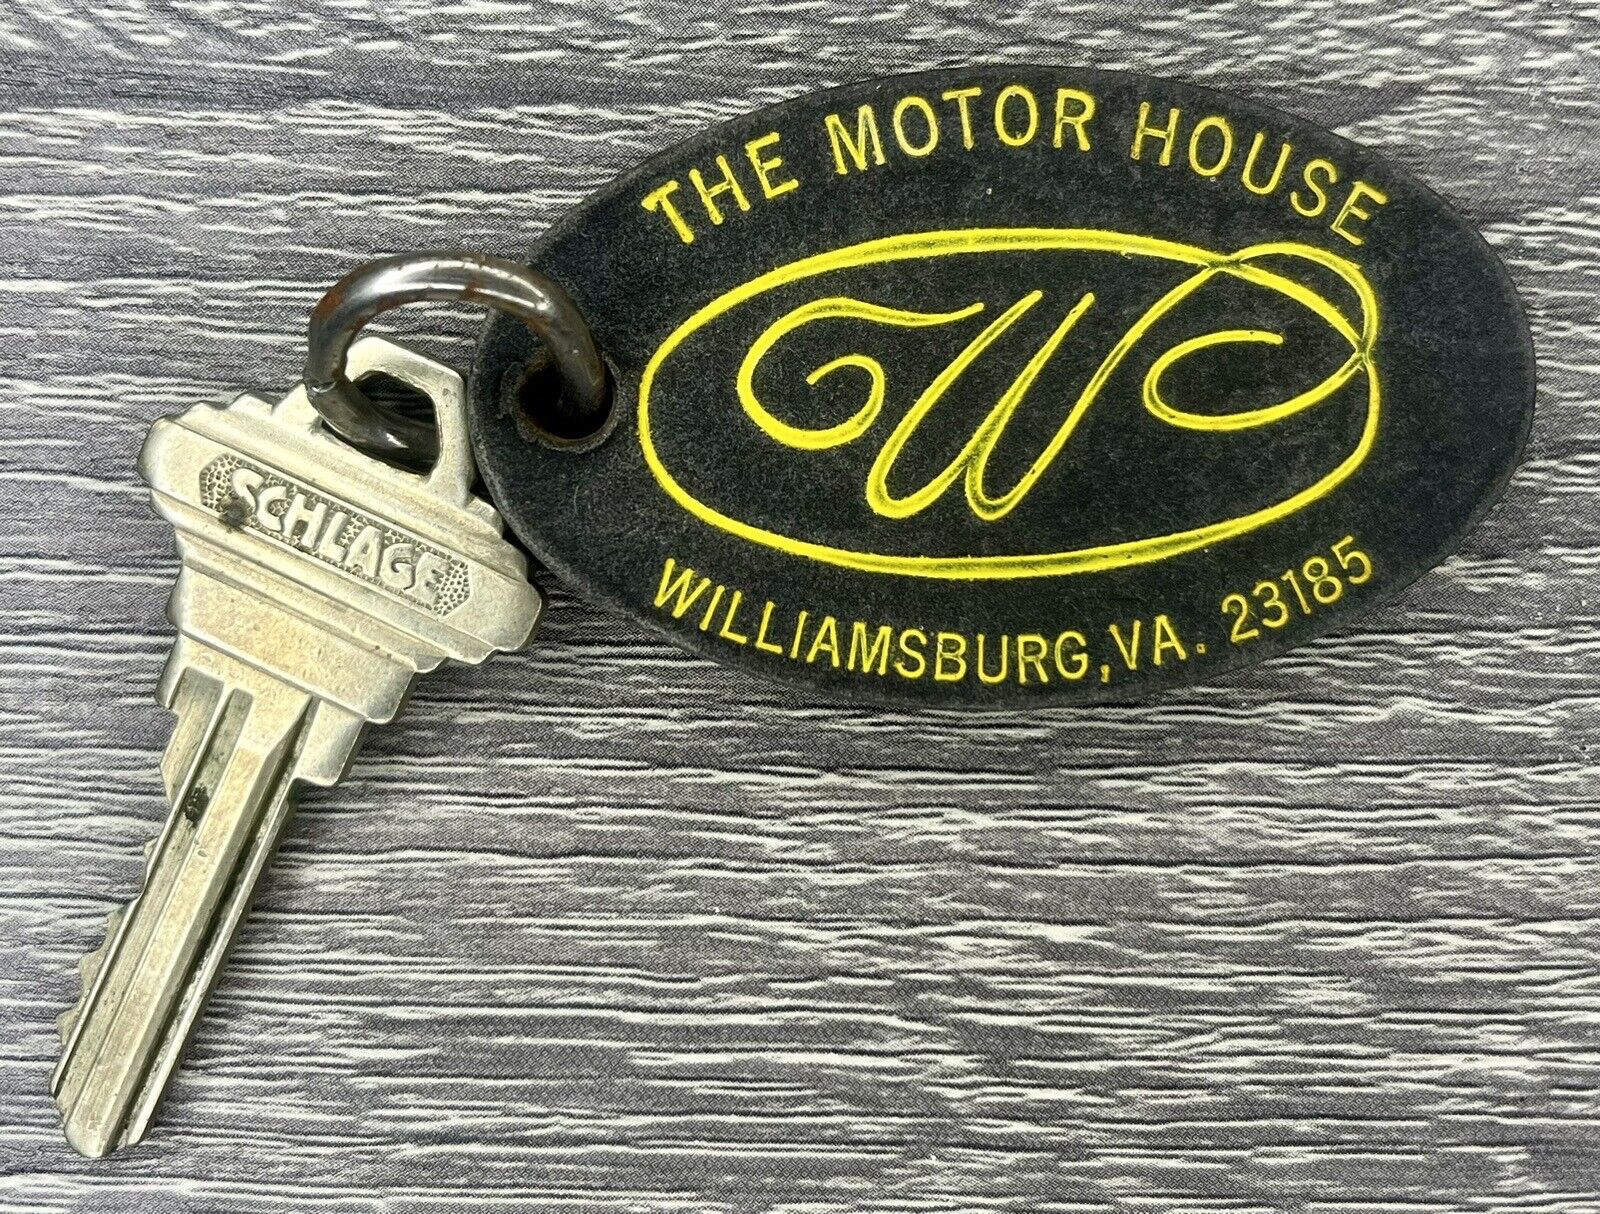 Vtg Hotel Door Key Fob The Motor House Williamsburg VA Room 234 Retro Motel MCM